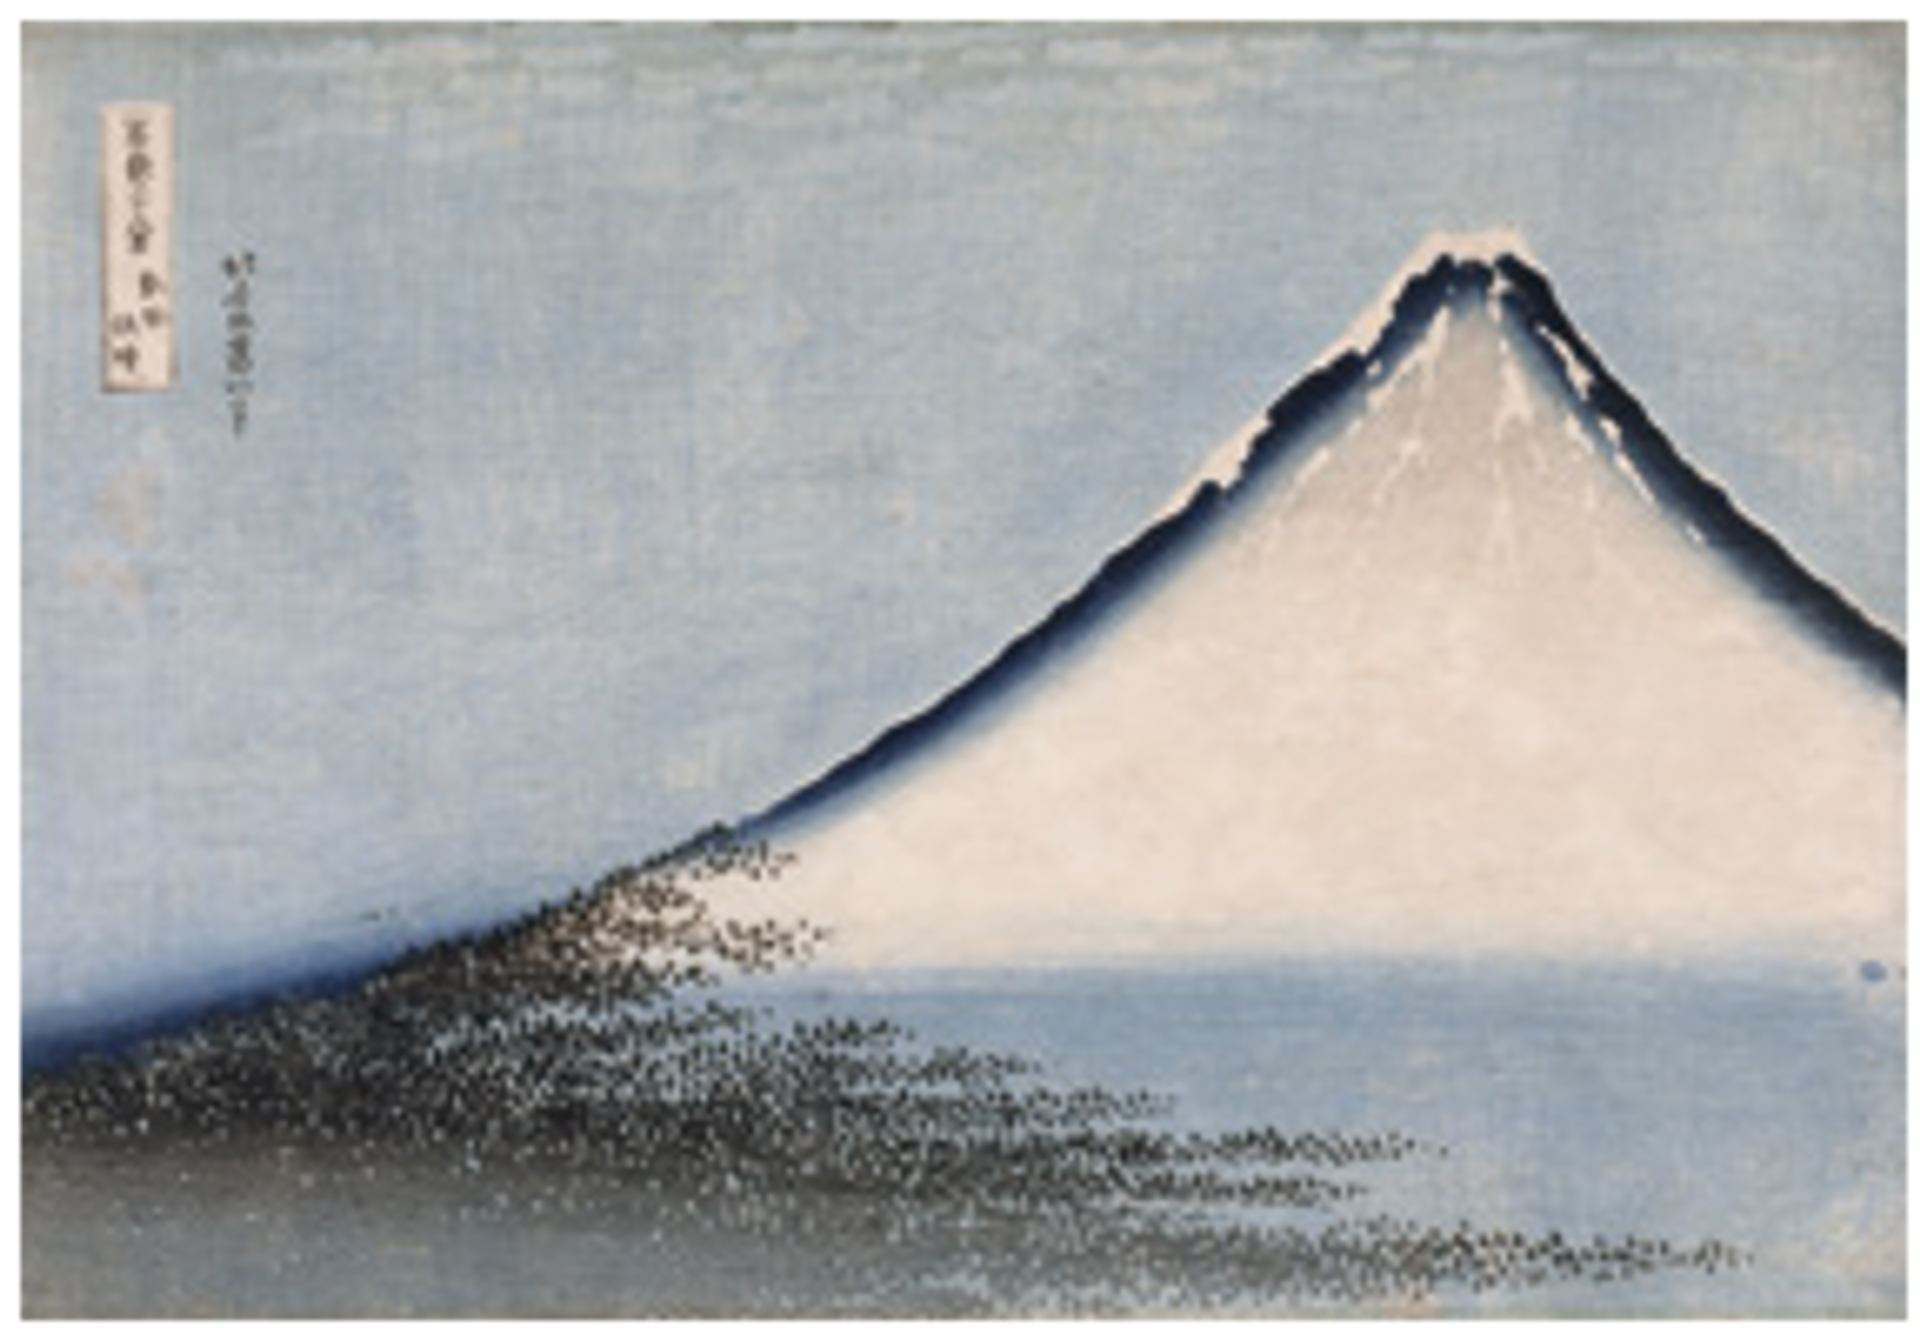 Hokusai, Vent frais par matin clair, dit Fuji bleu, série des Trente-six  vues du mont Fuji, 1831, xylogravure  monochrome en bleu, musée national des Arts asiatiques – Guimet, Paris. © RMN-Grand Palais (MNAAG, Paris) / Thierry Ollivier